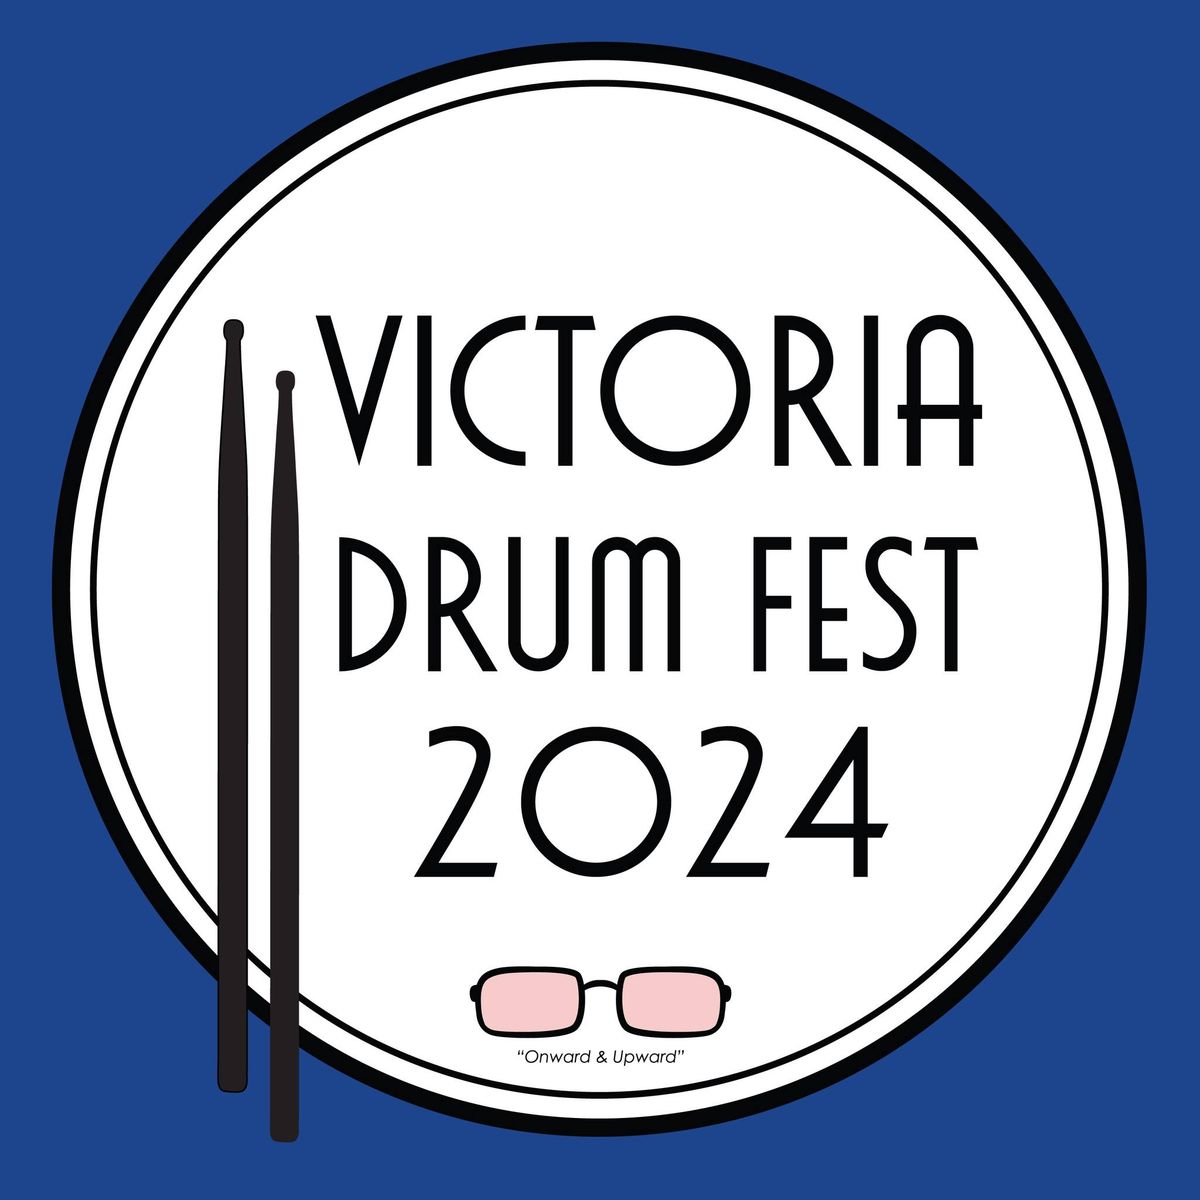 Victoria Drum Fest 2024